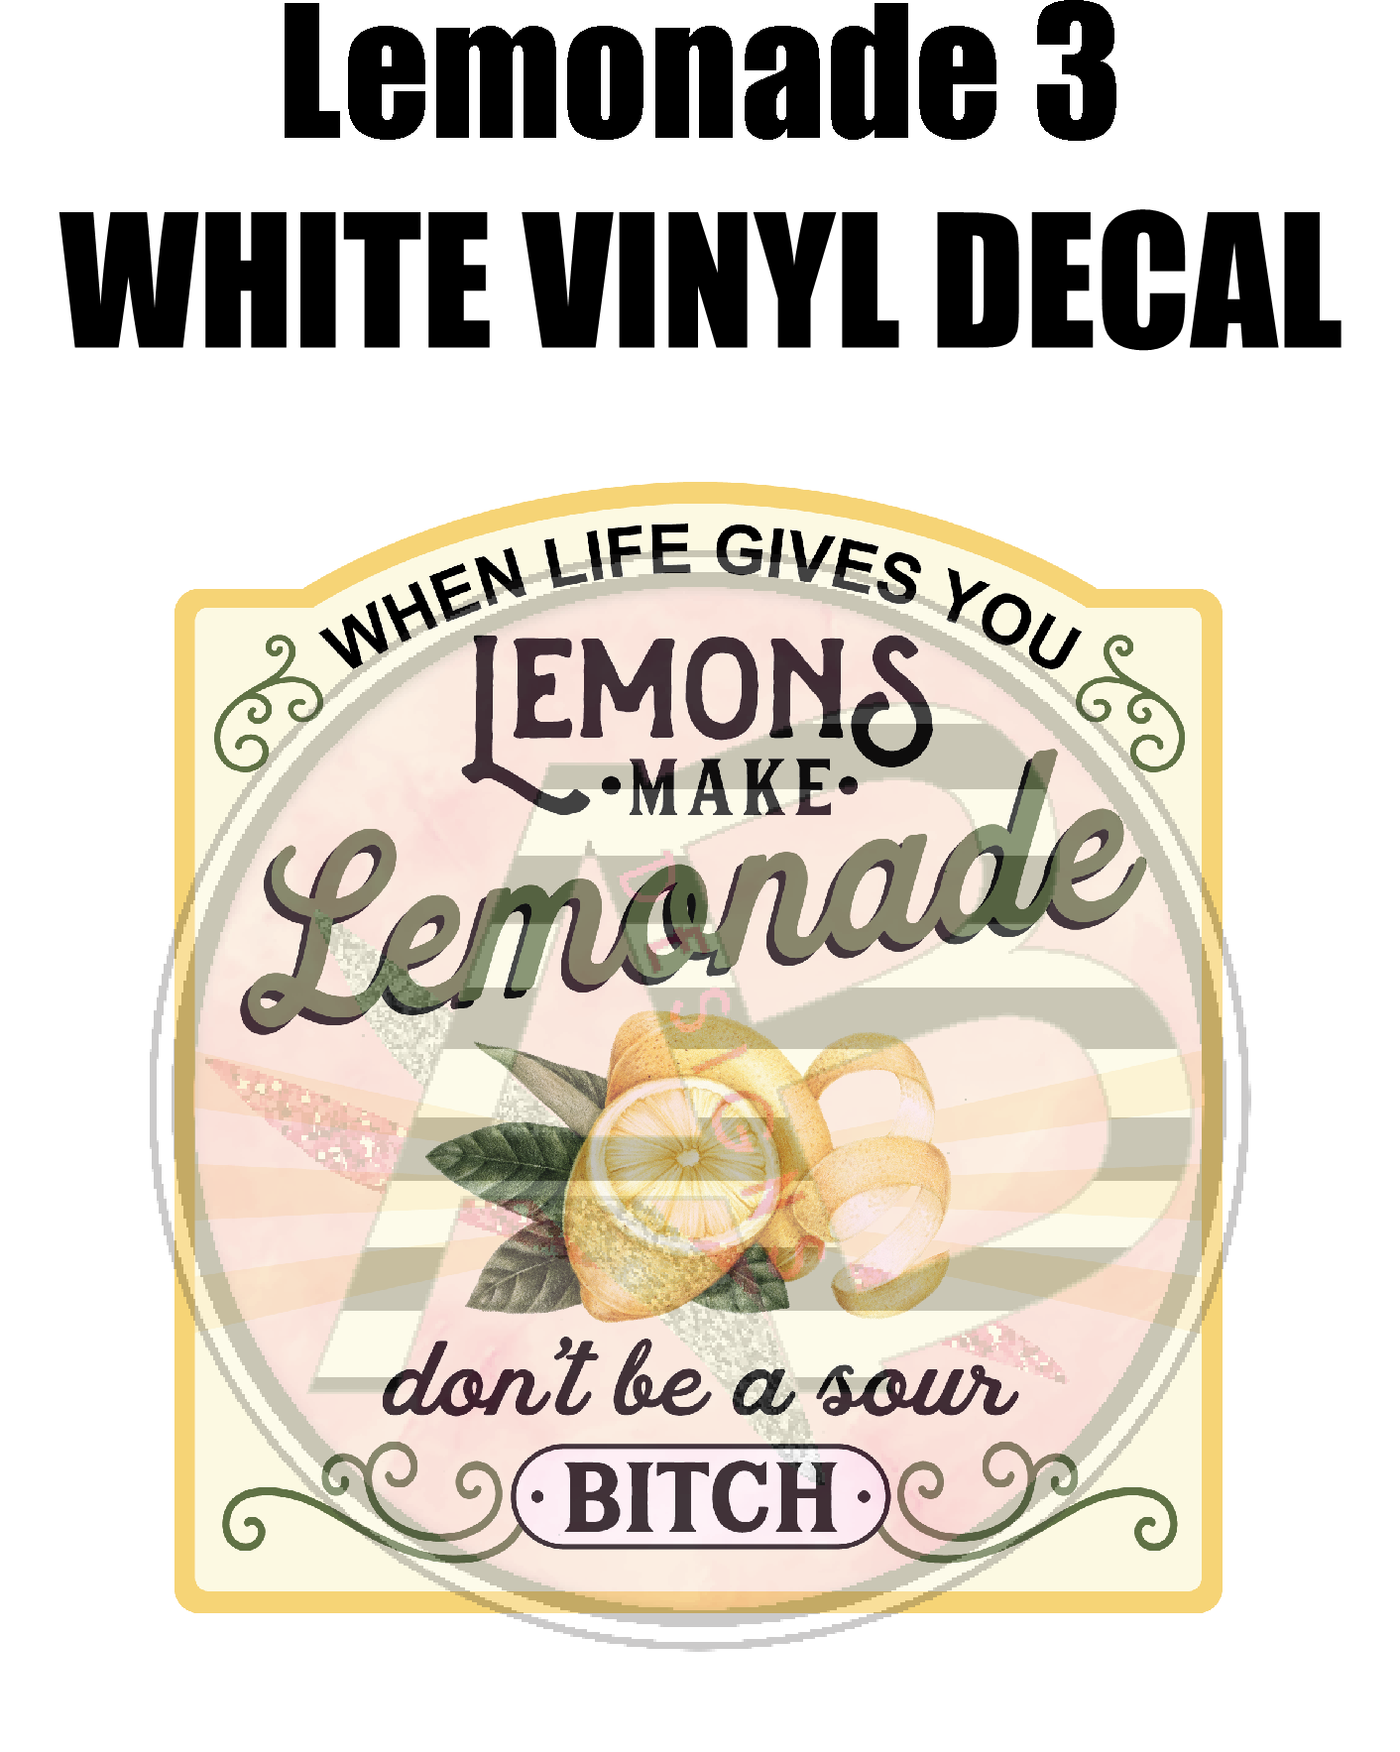 Lemonade 3 - White Vinyl Decal